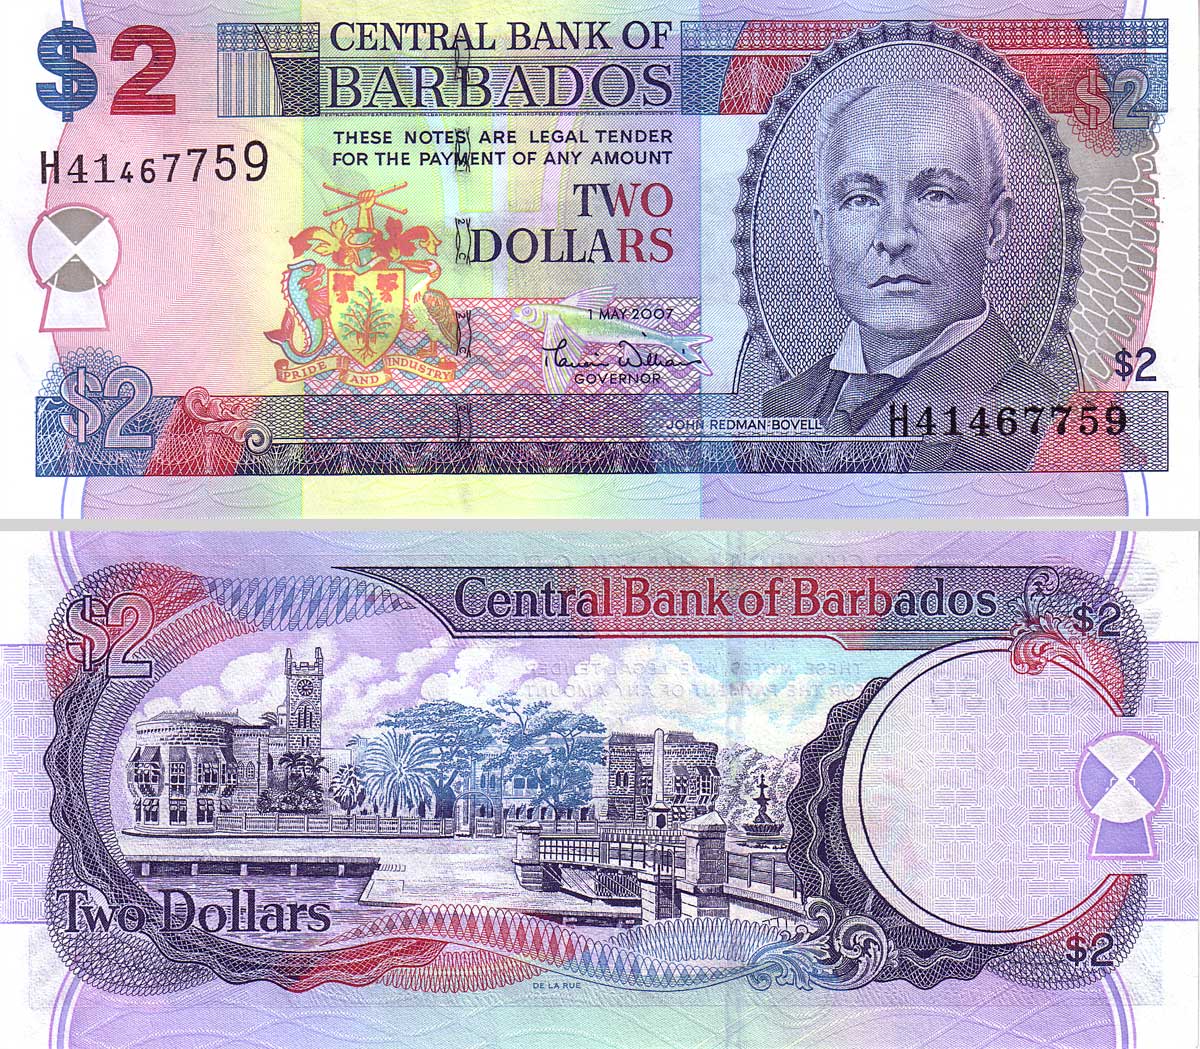 Barbados dollarcentral bank of barbados 2 dollar note ...